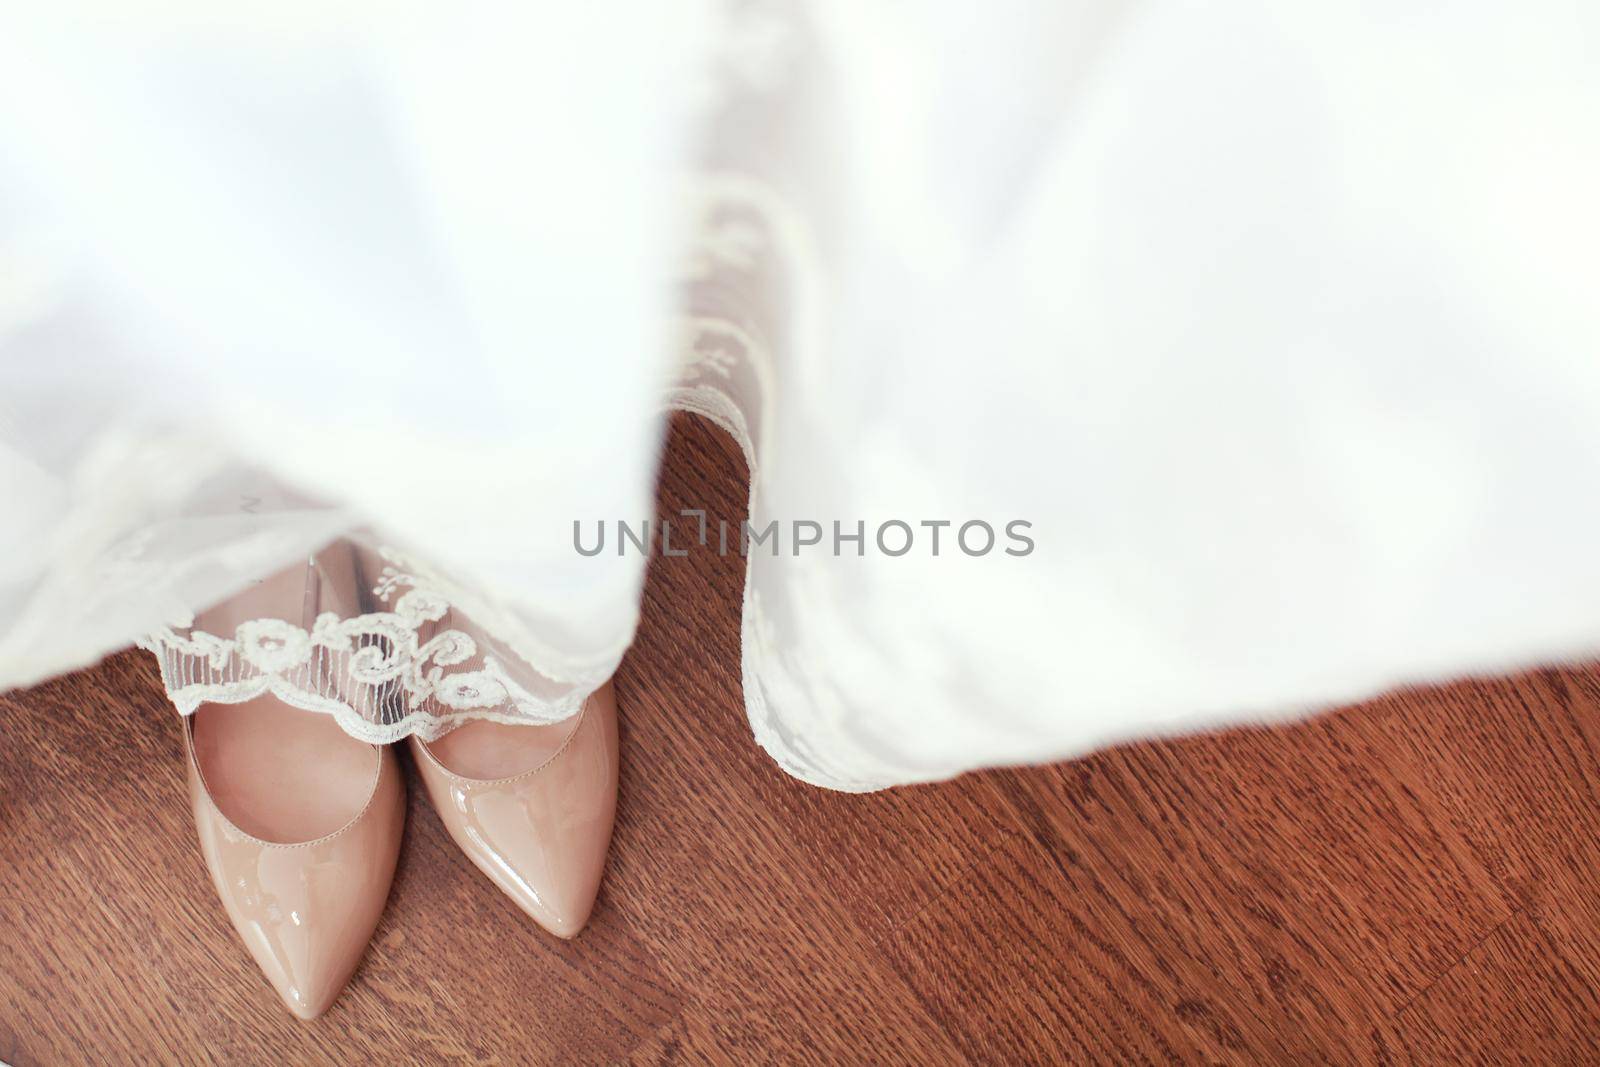 Beautiful wedding shoes under the dress by IvanGalashchuk